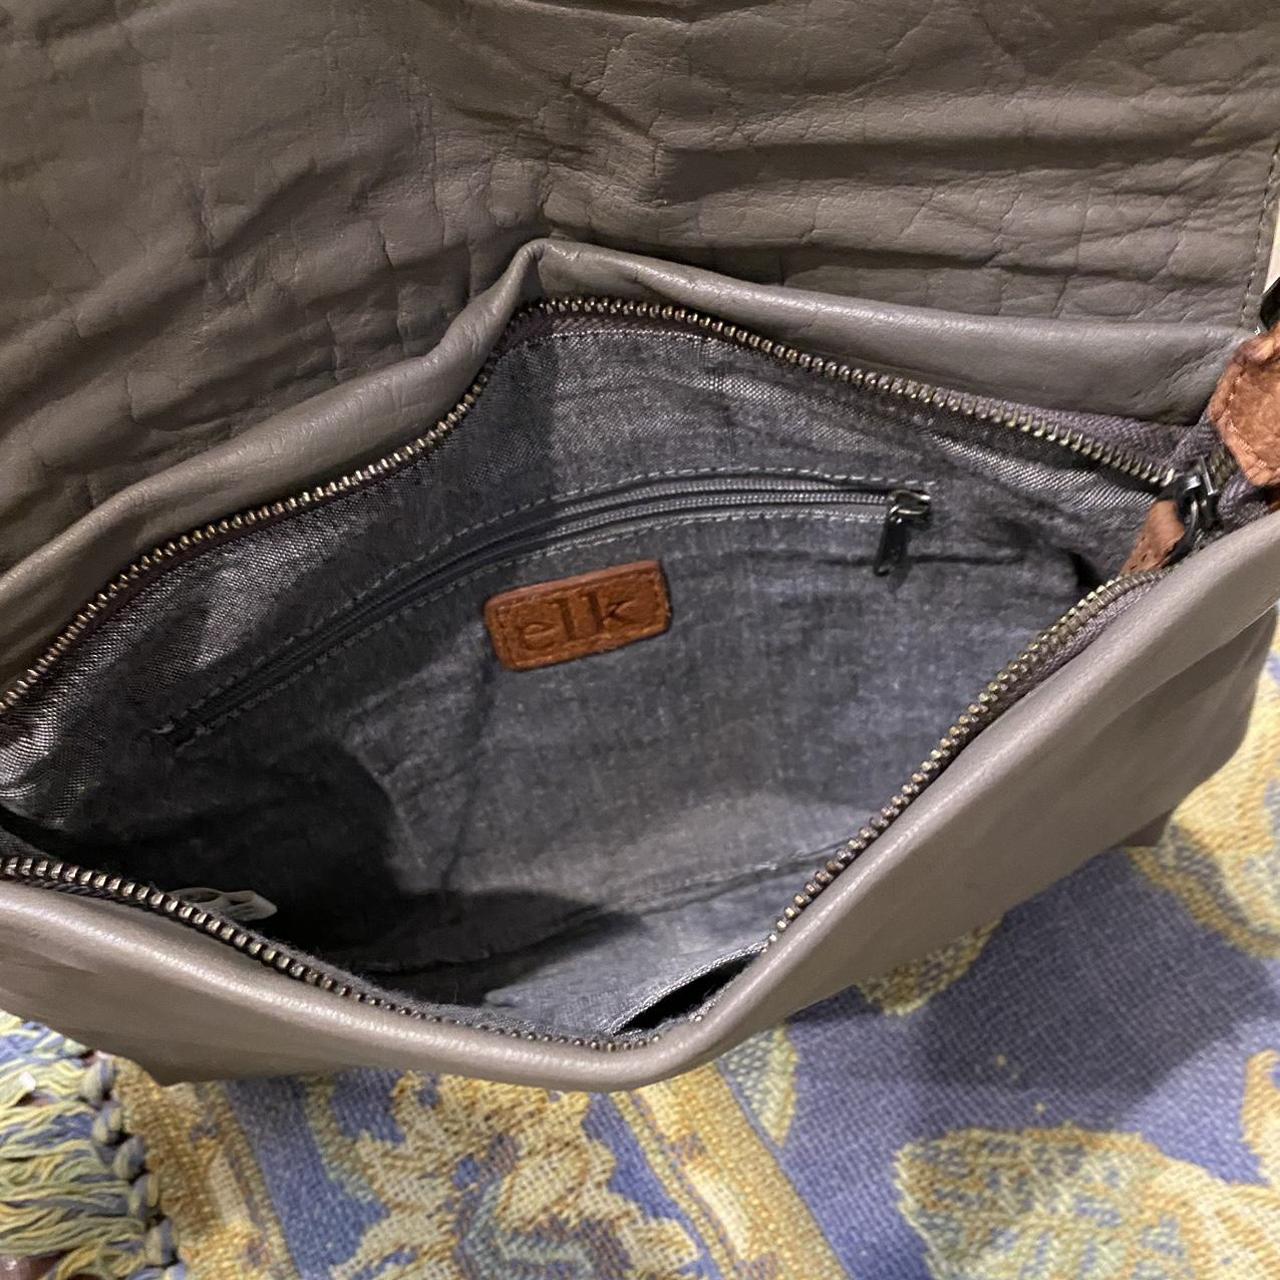 elk handbag, adjustable strap, leather, grey and... - Depop